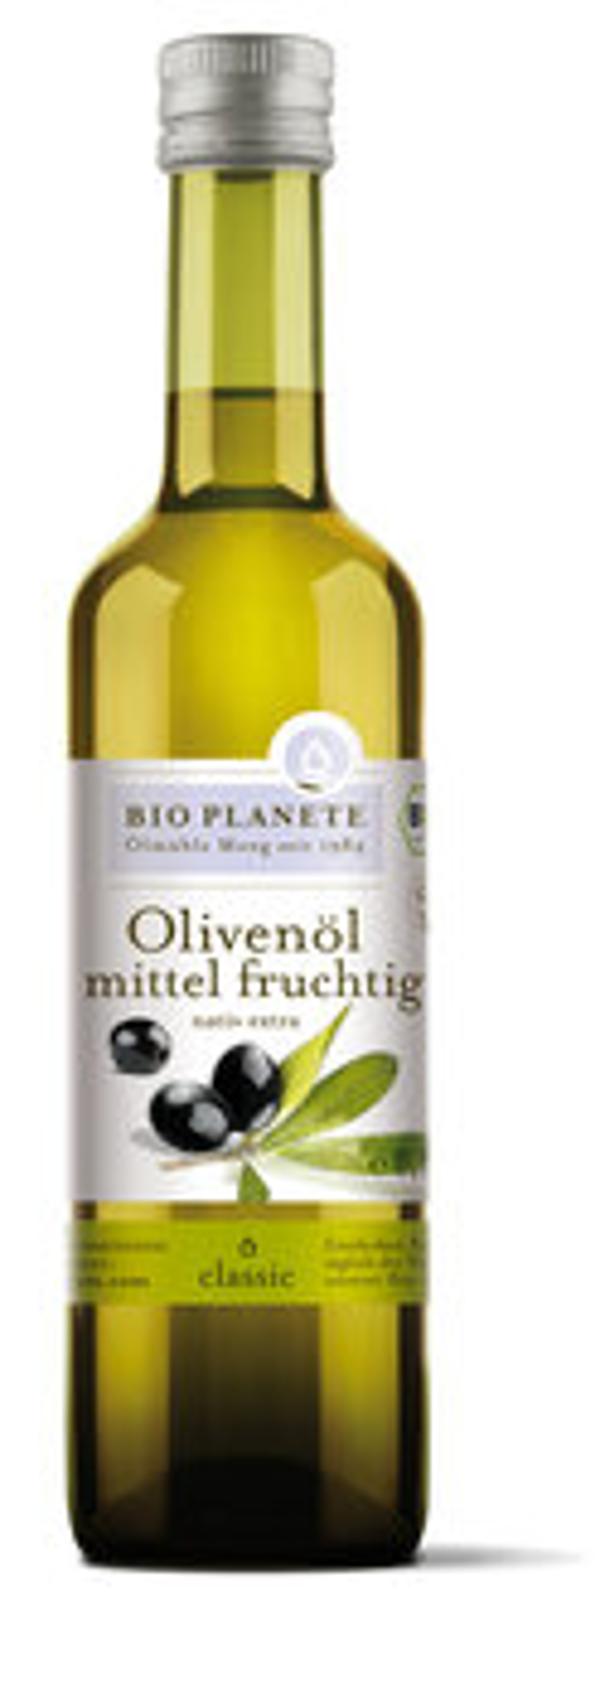 Produktfoto zu Olivenöl mittel fruchtig,500ml